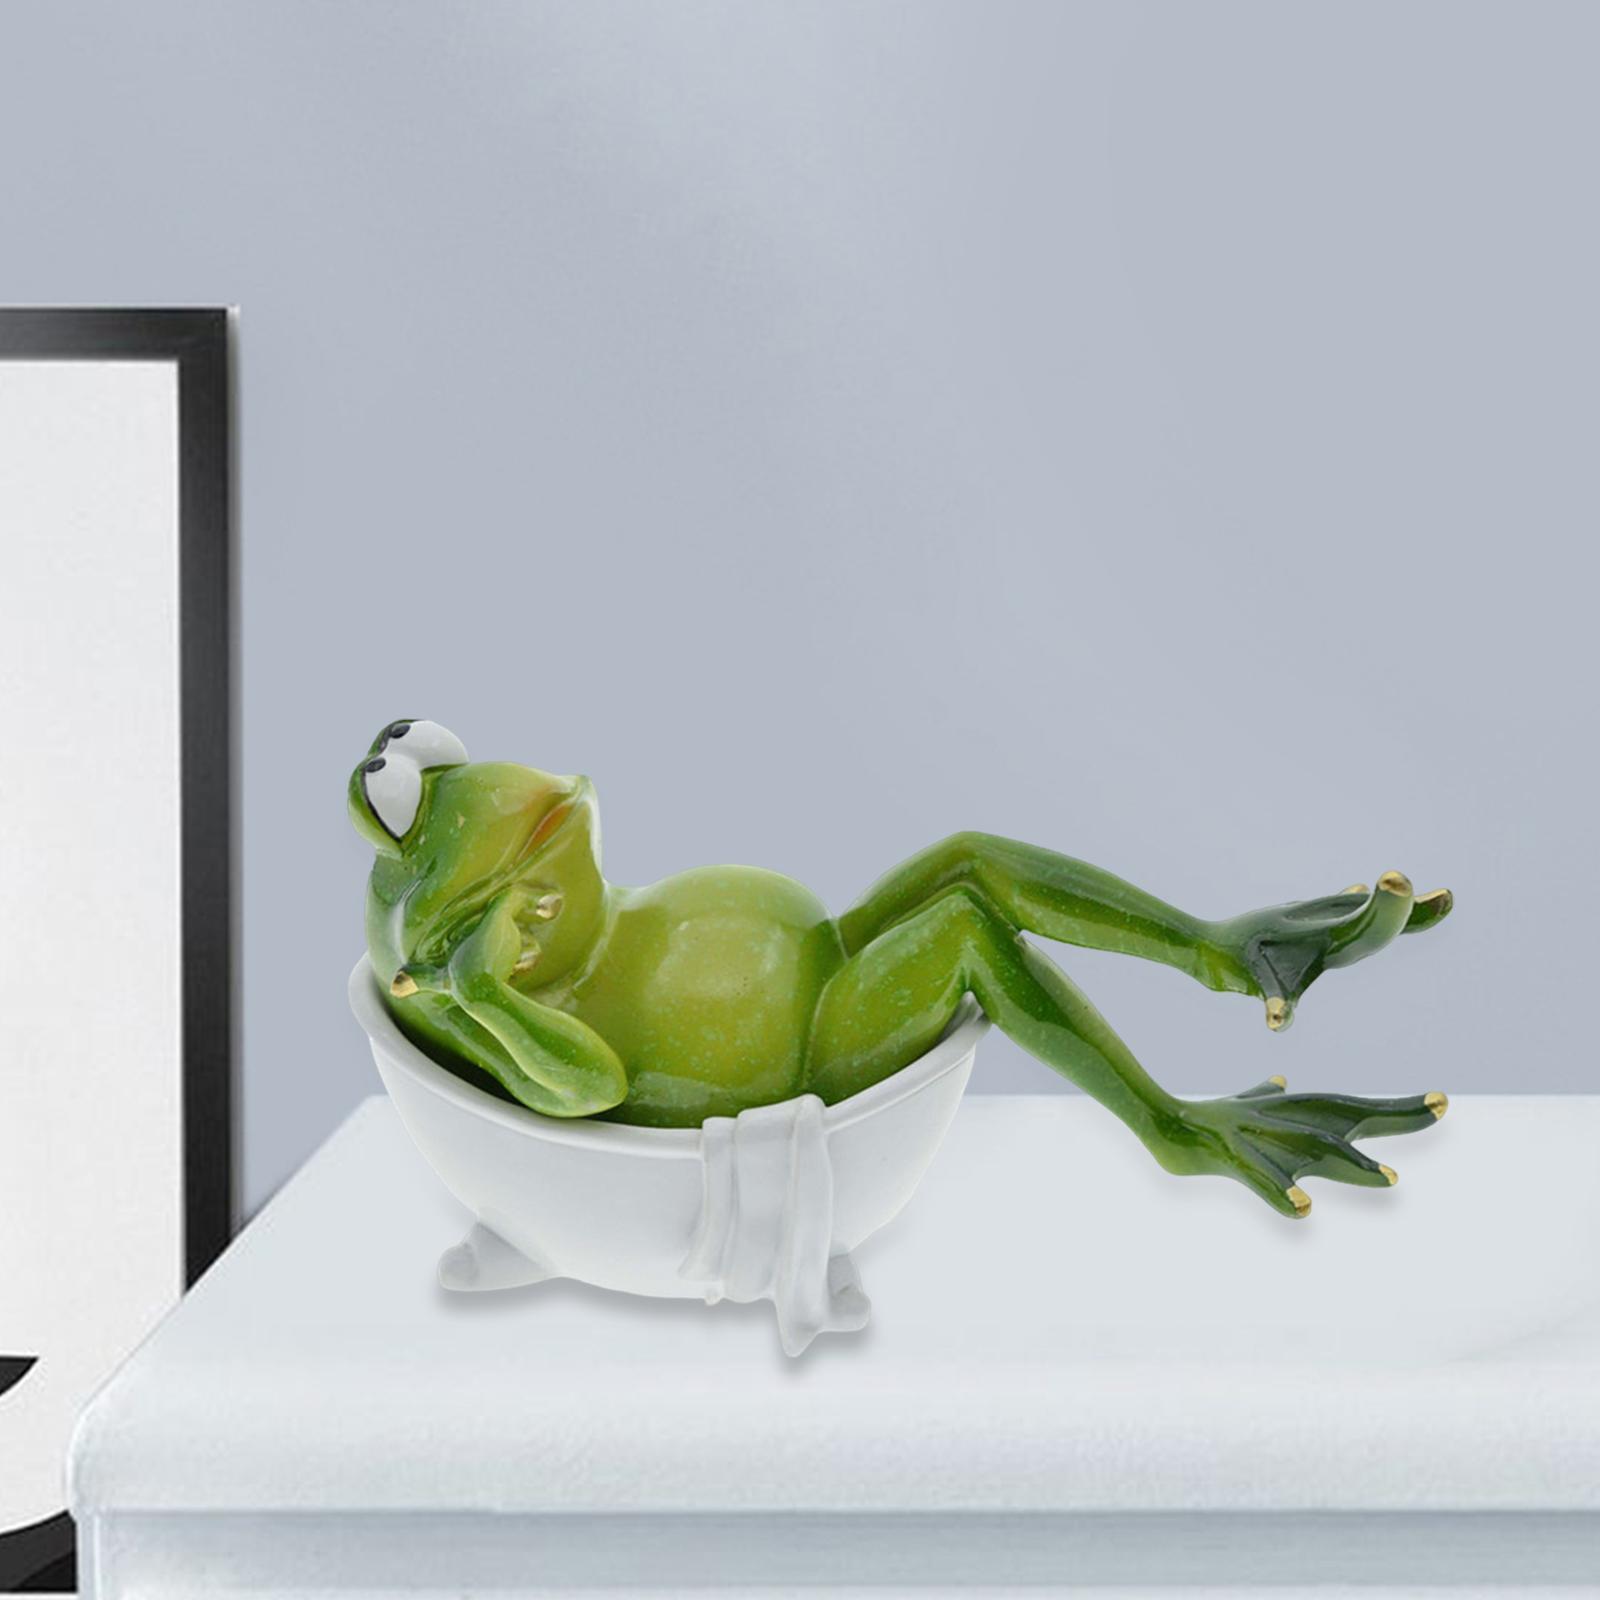 Frog Statue Resin Sculpture Figurine Indoor Home Decorative